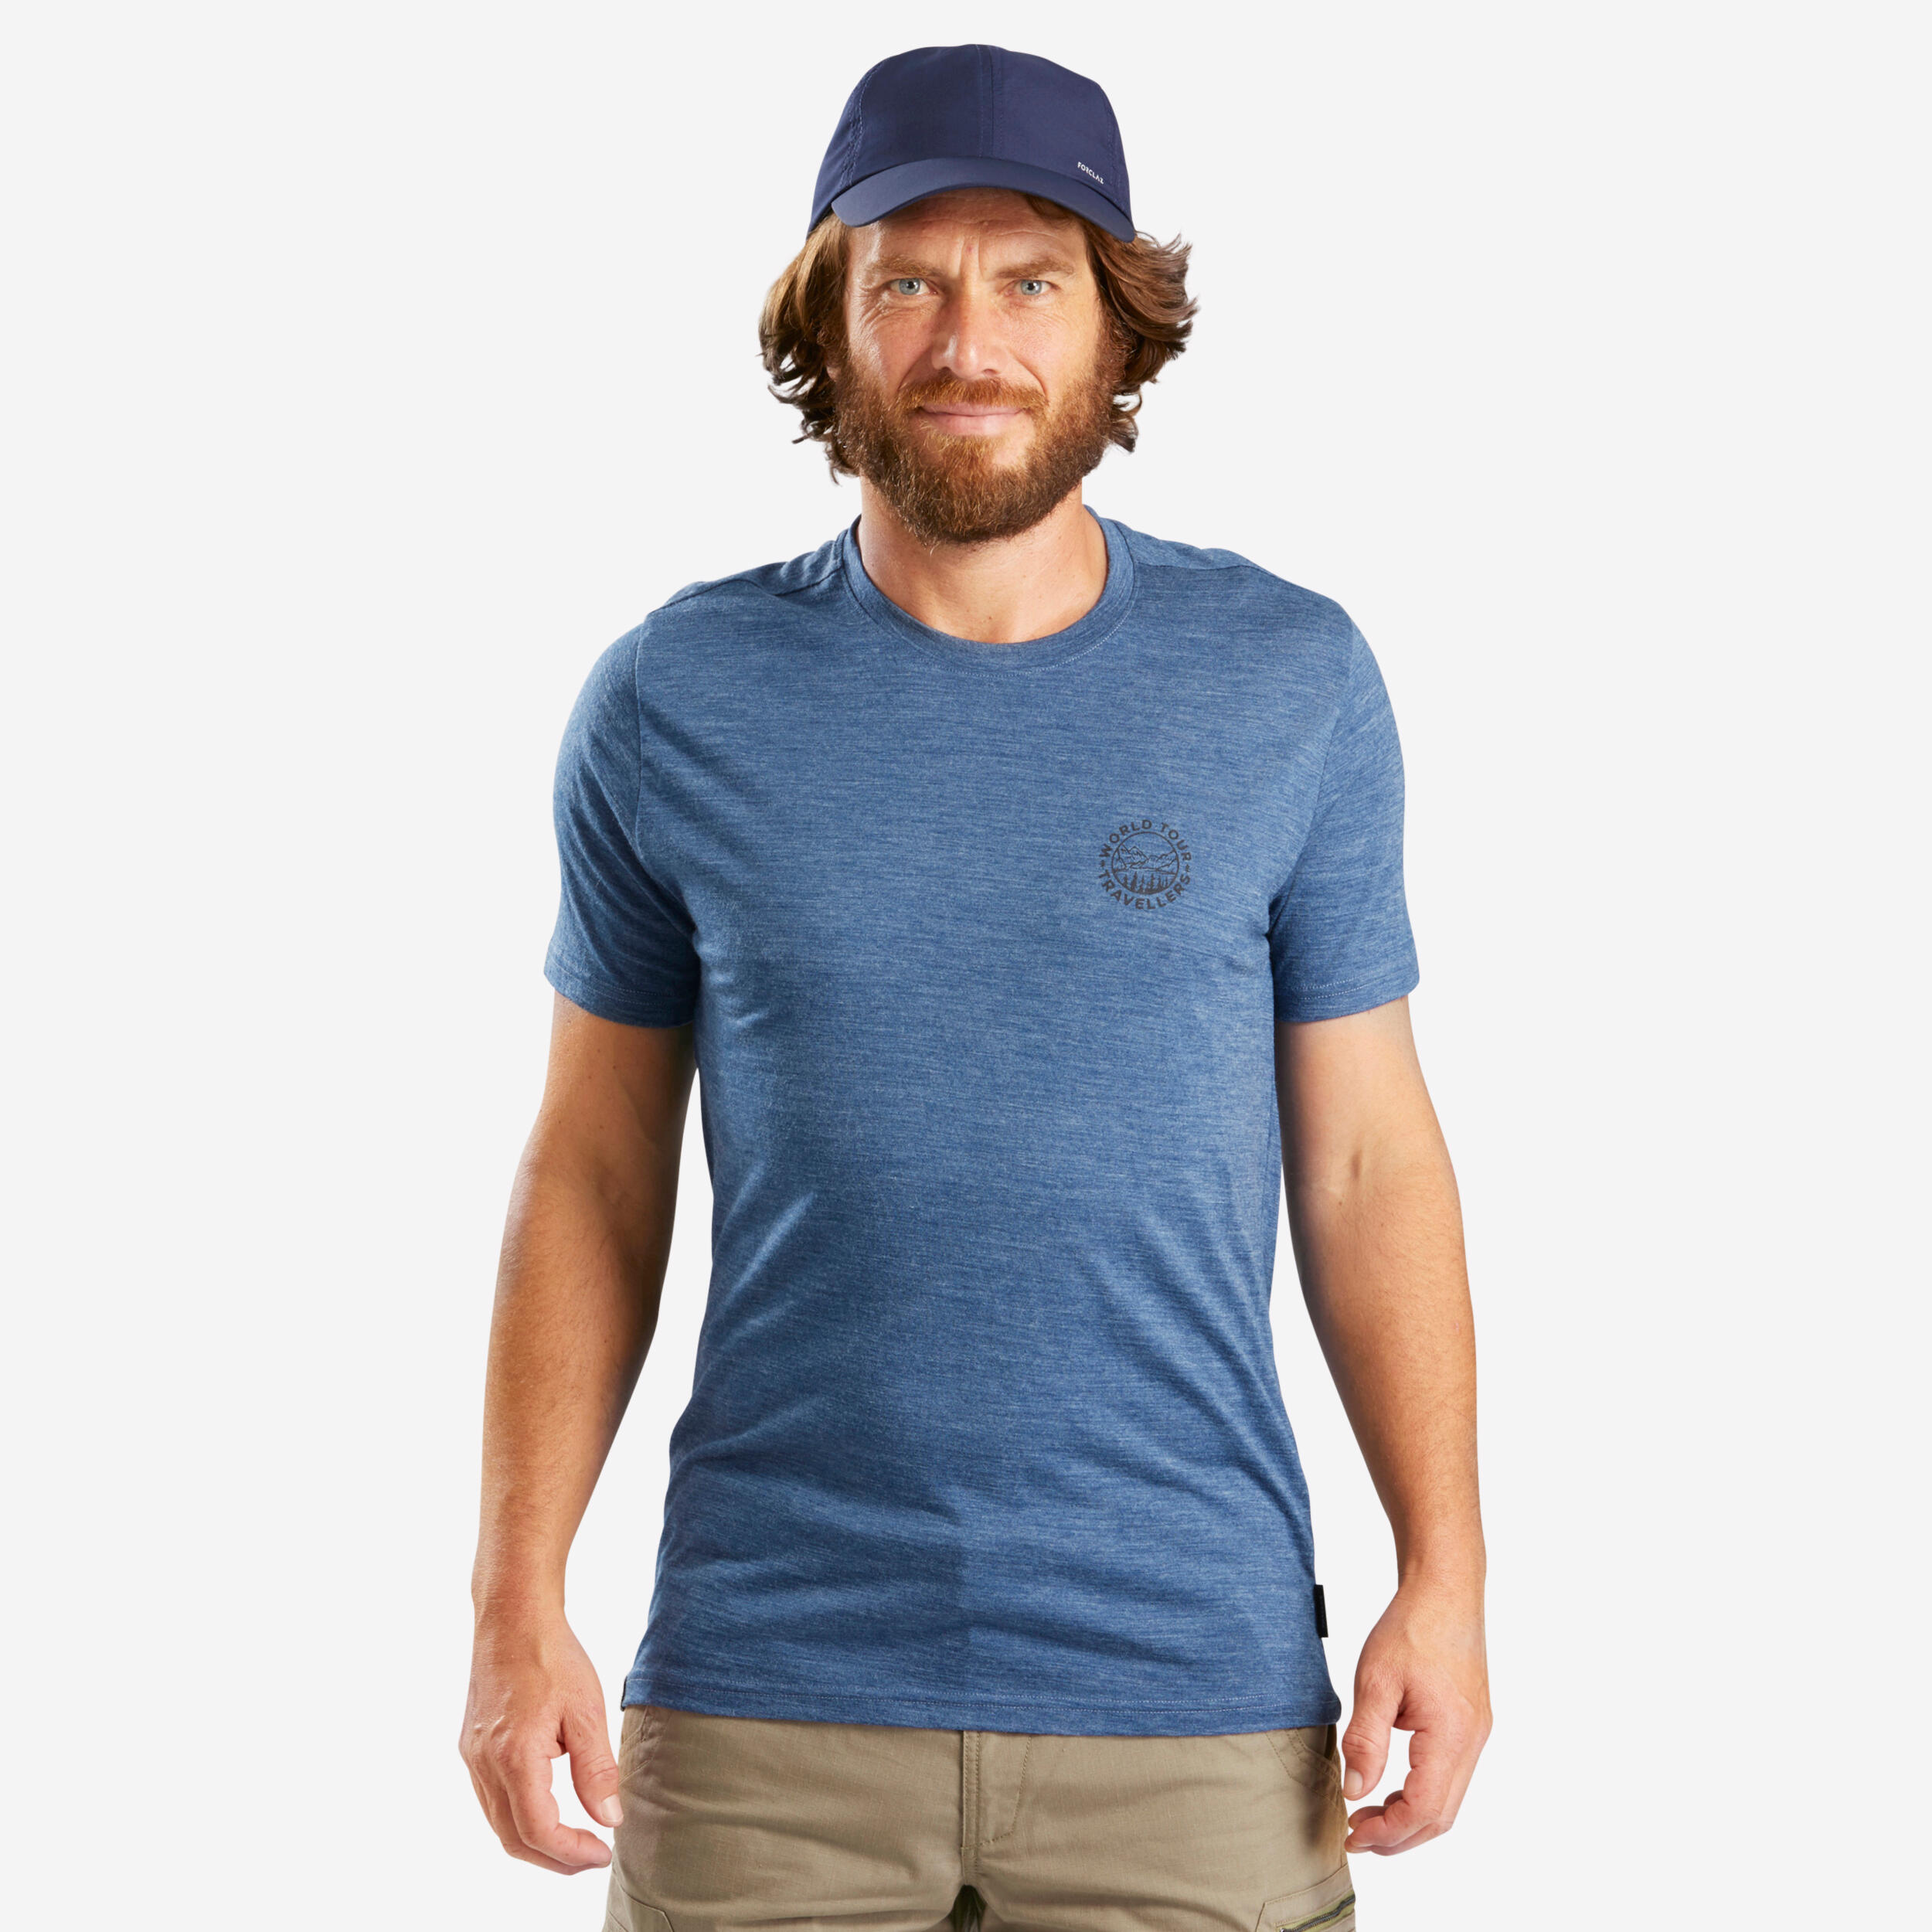 T-shirt en laine mérinos homme – Travel 500 - FORCLAZ